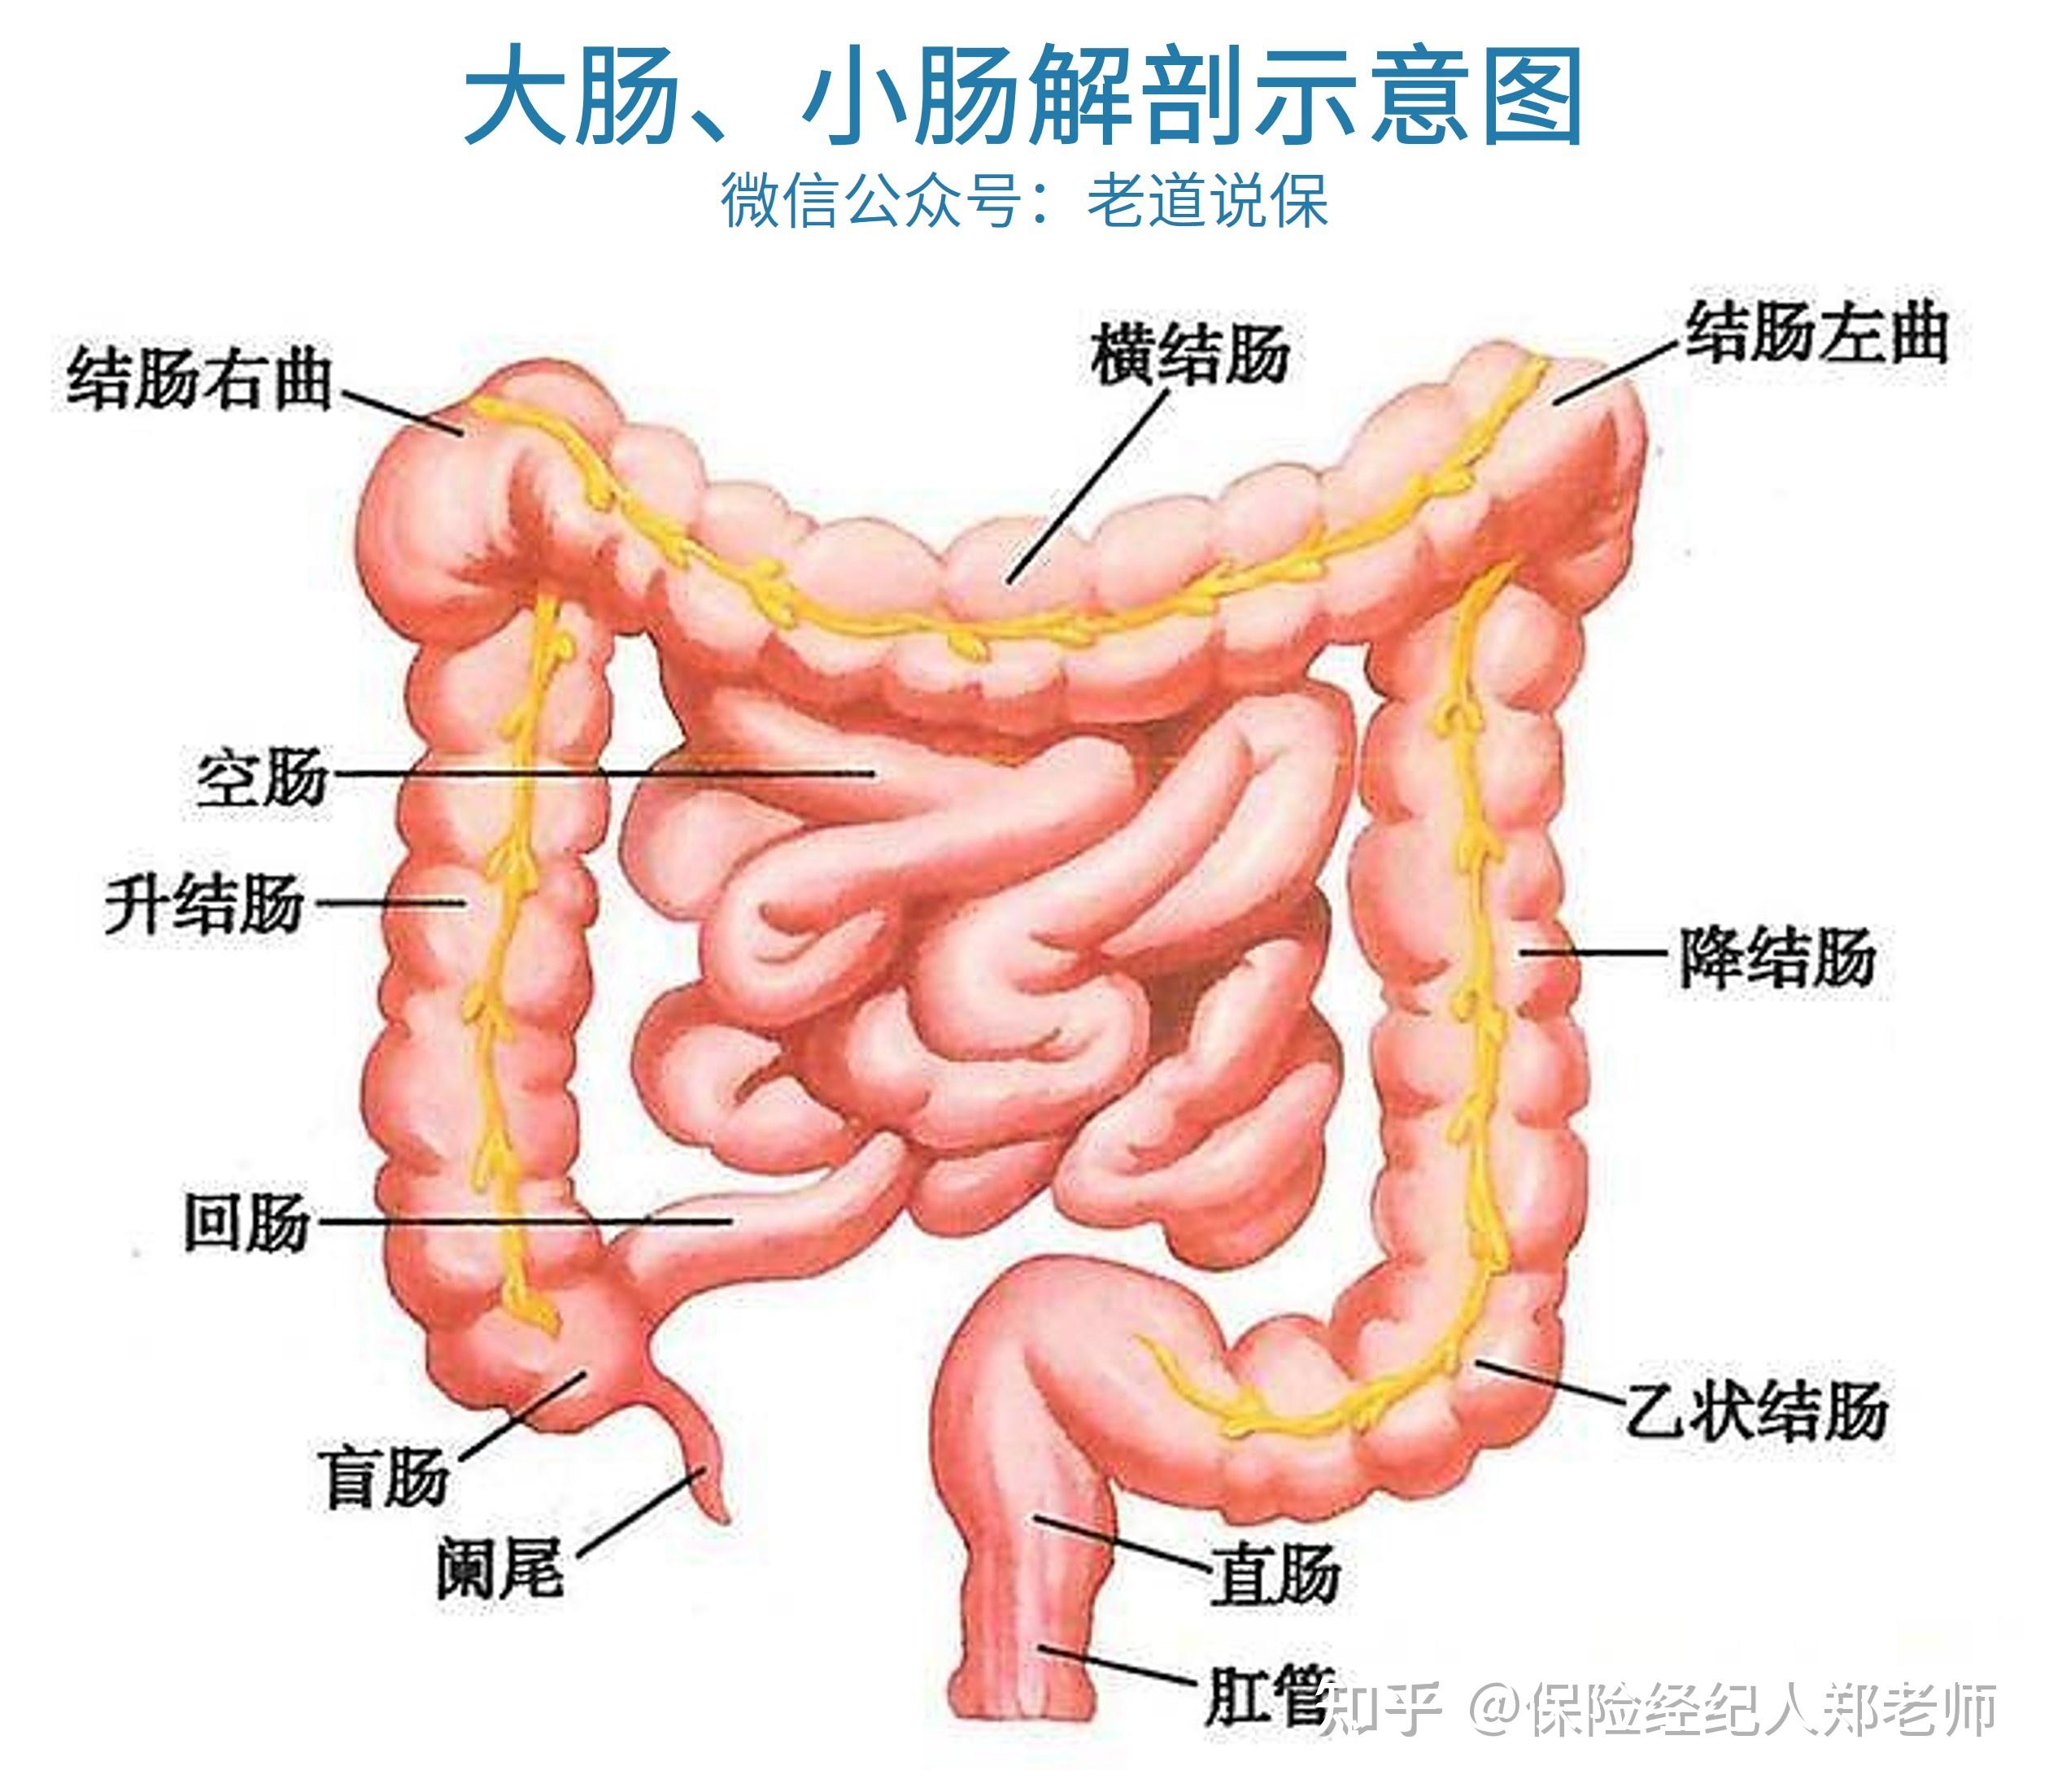 结肠又分为升结肠,横结肠,降结肠和乙状结肠四部分